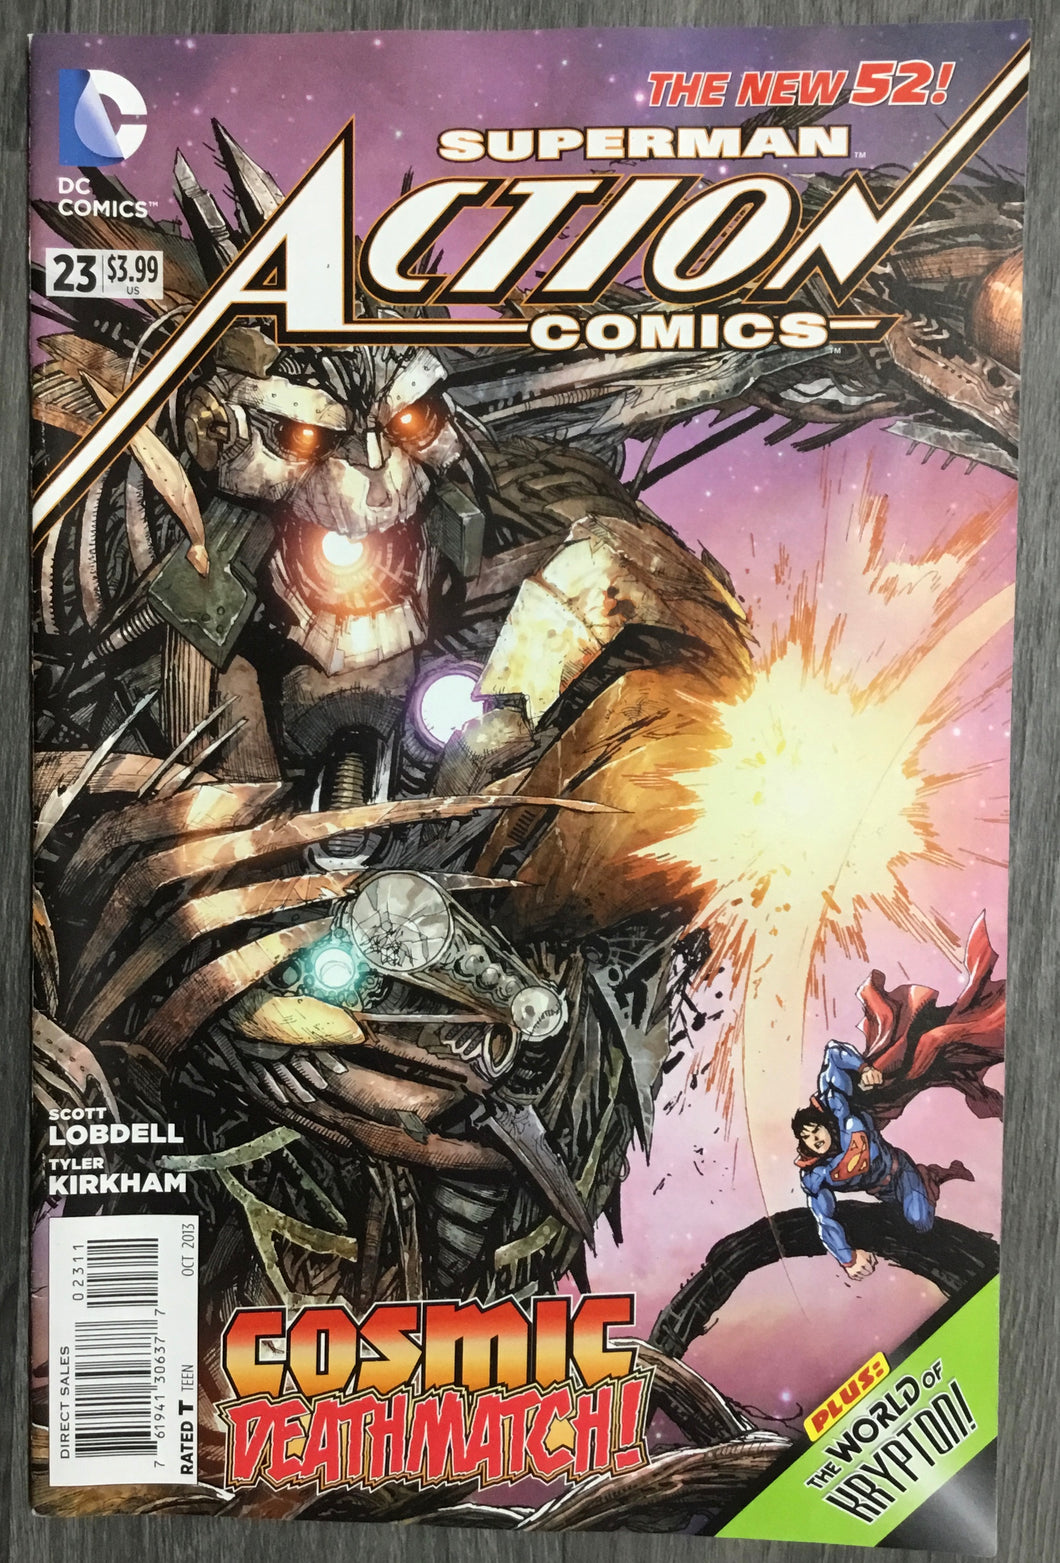 Action Comics (The New 52) No. #23 2013 DC Comics